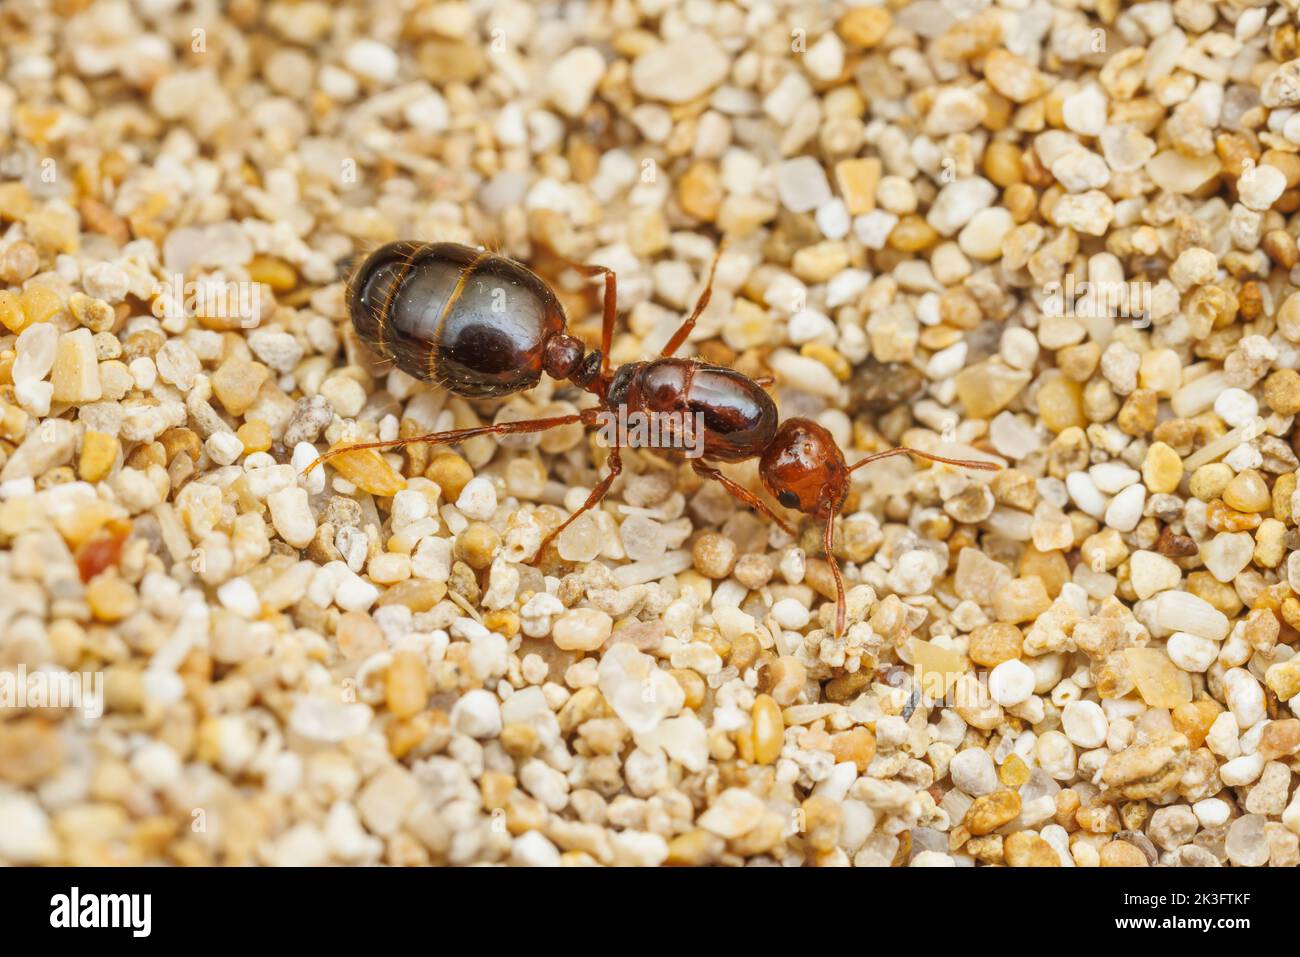 Formicidae queen e imágenes de alta resolución Alamy